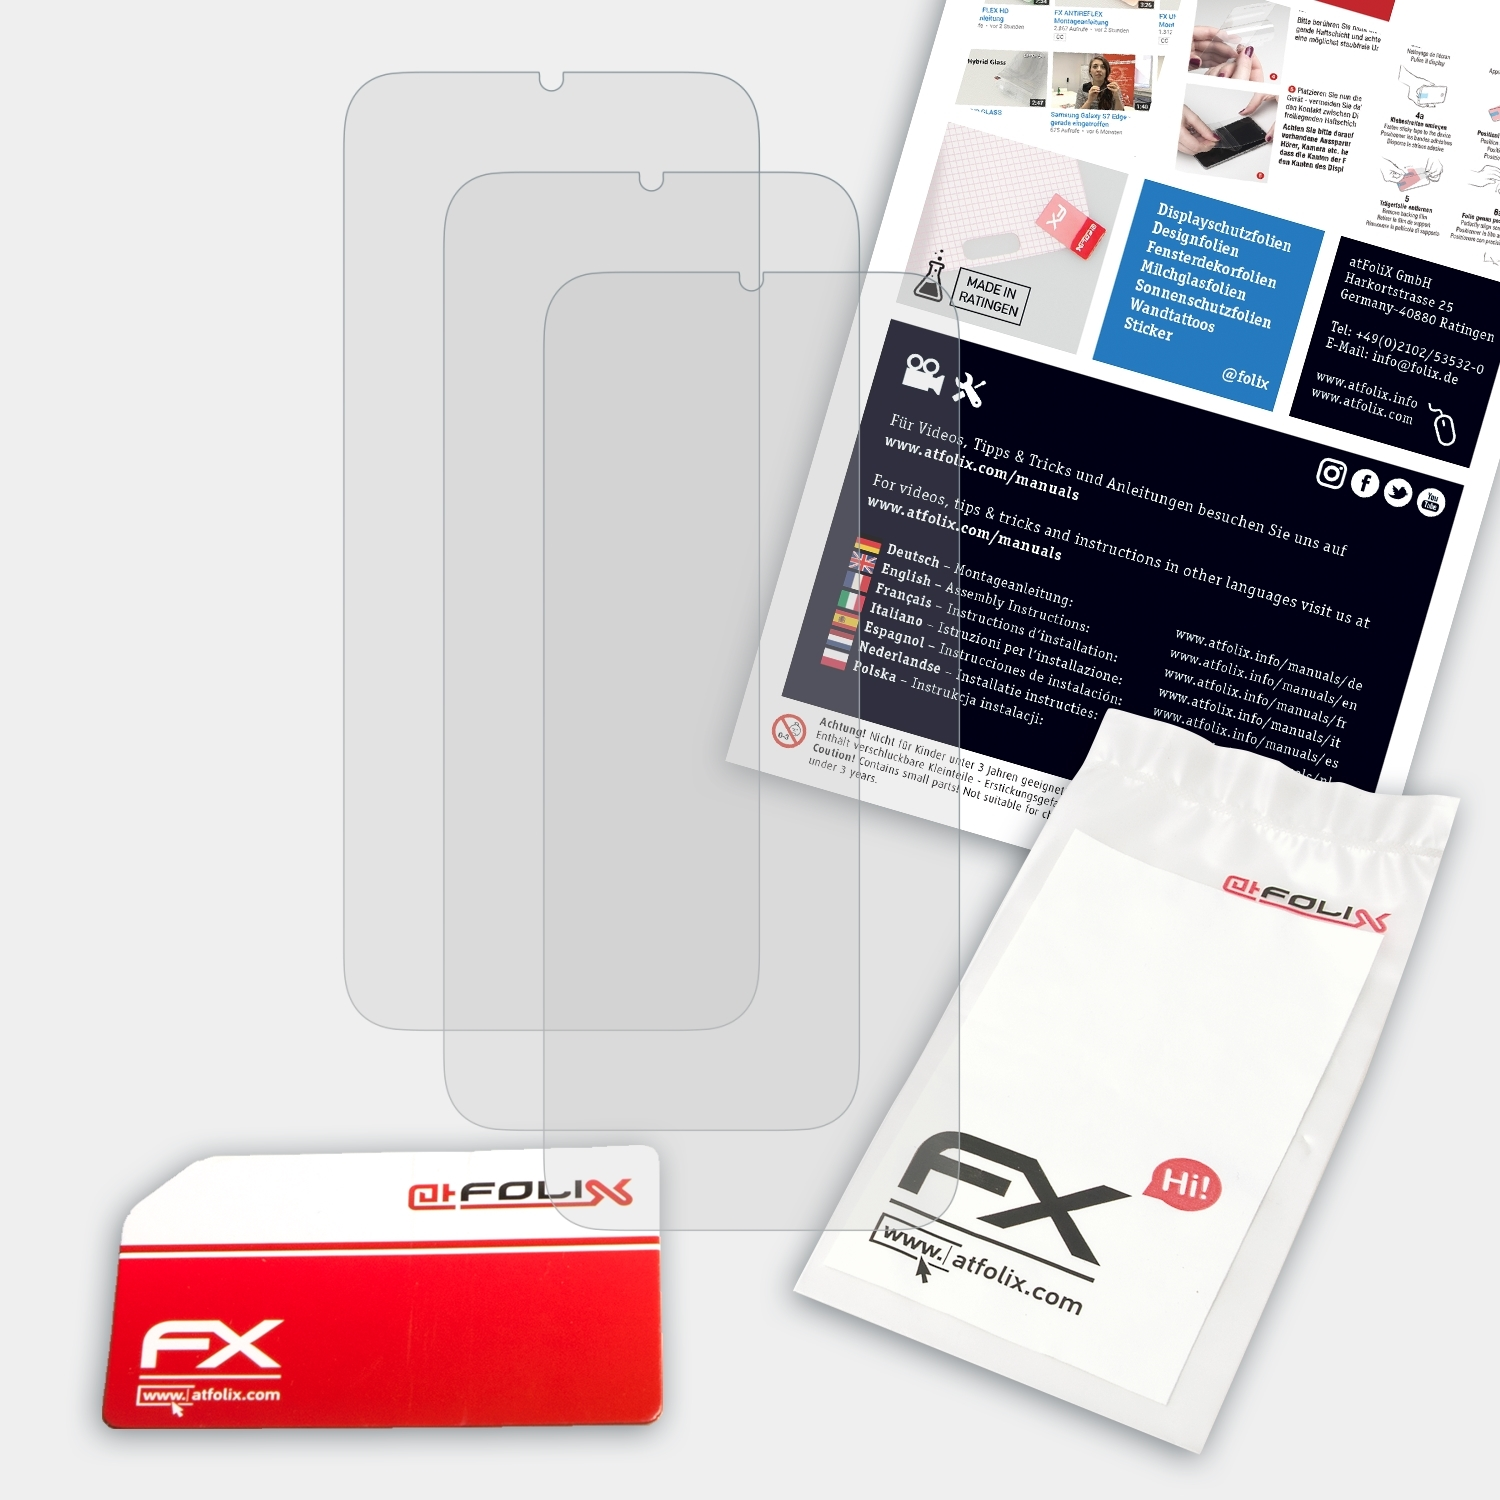 ATFOLIX Displayschutz(für Pro) 3x DOOGEE FX-Antireflex X96